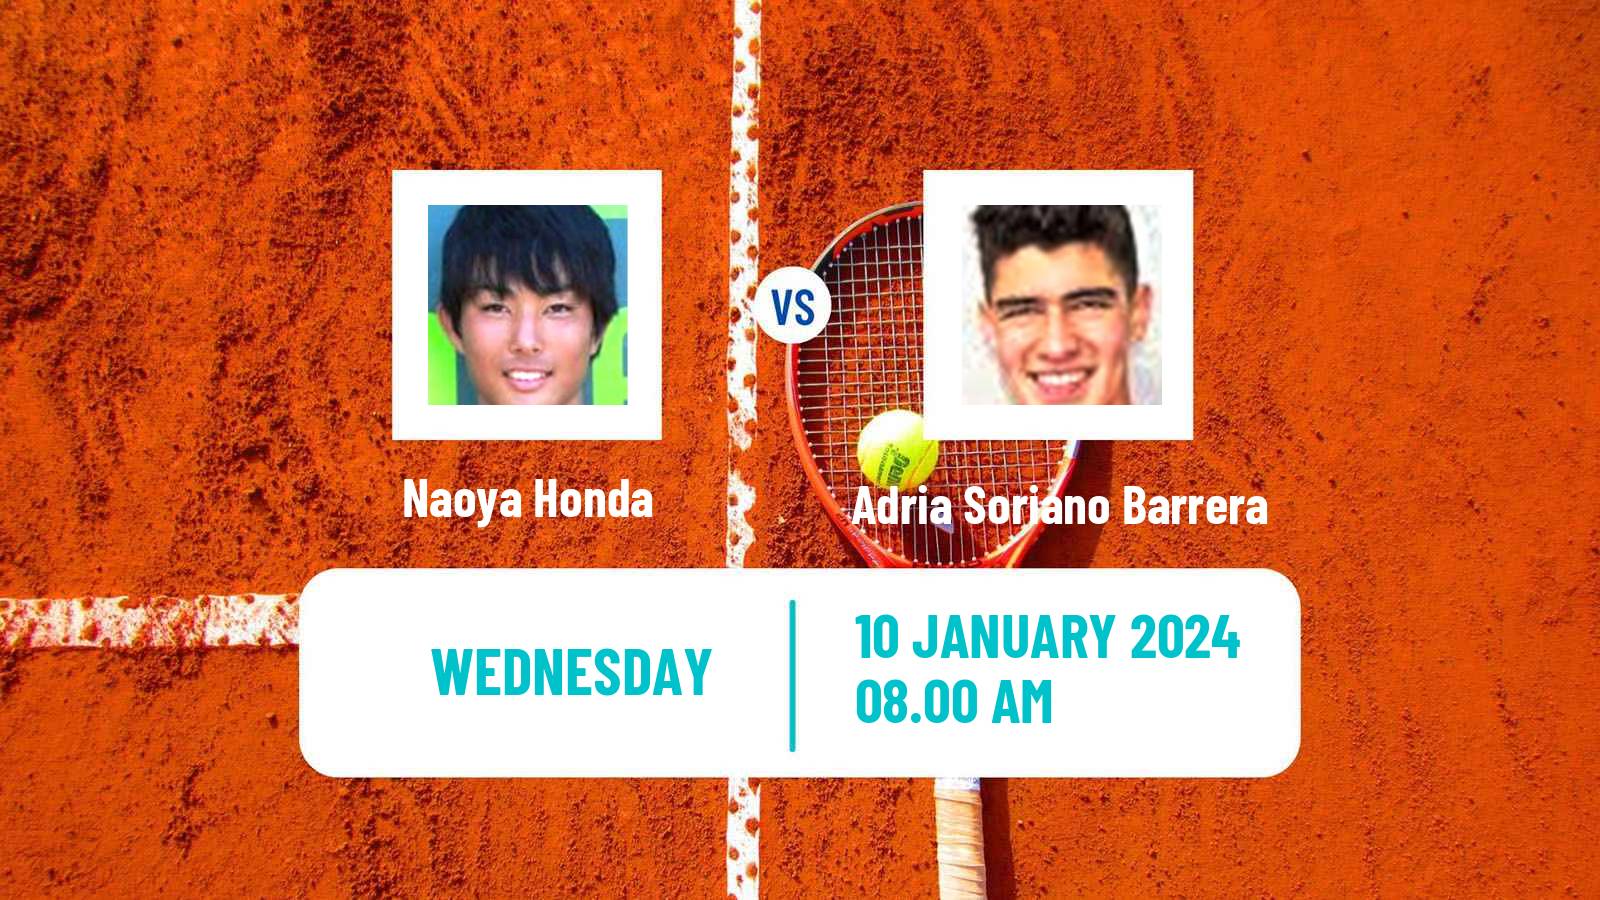 Tennis ITF M15 Manacor Men Naoya Honda - Adria Soriano Barrera